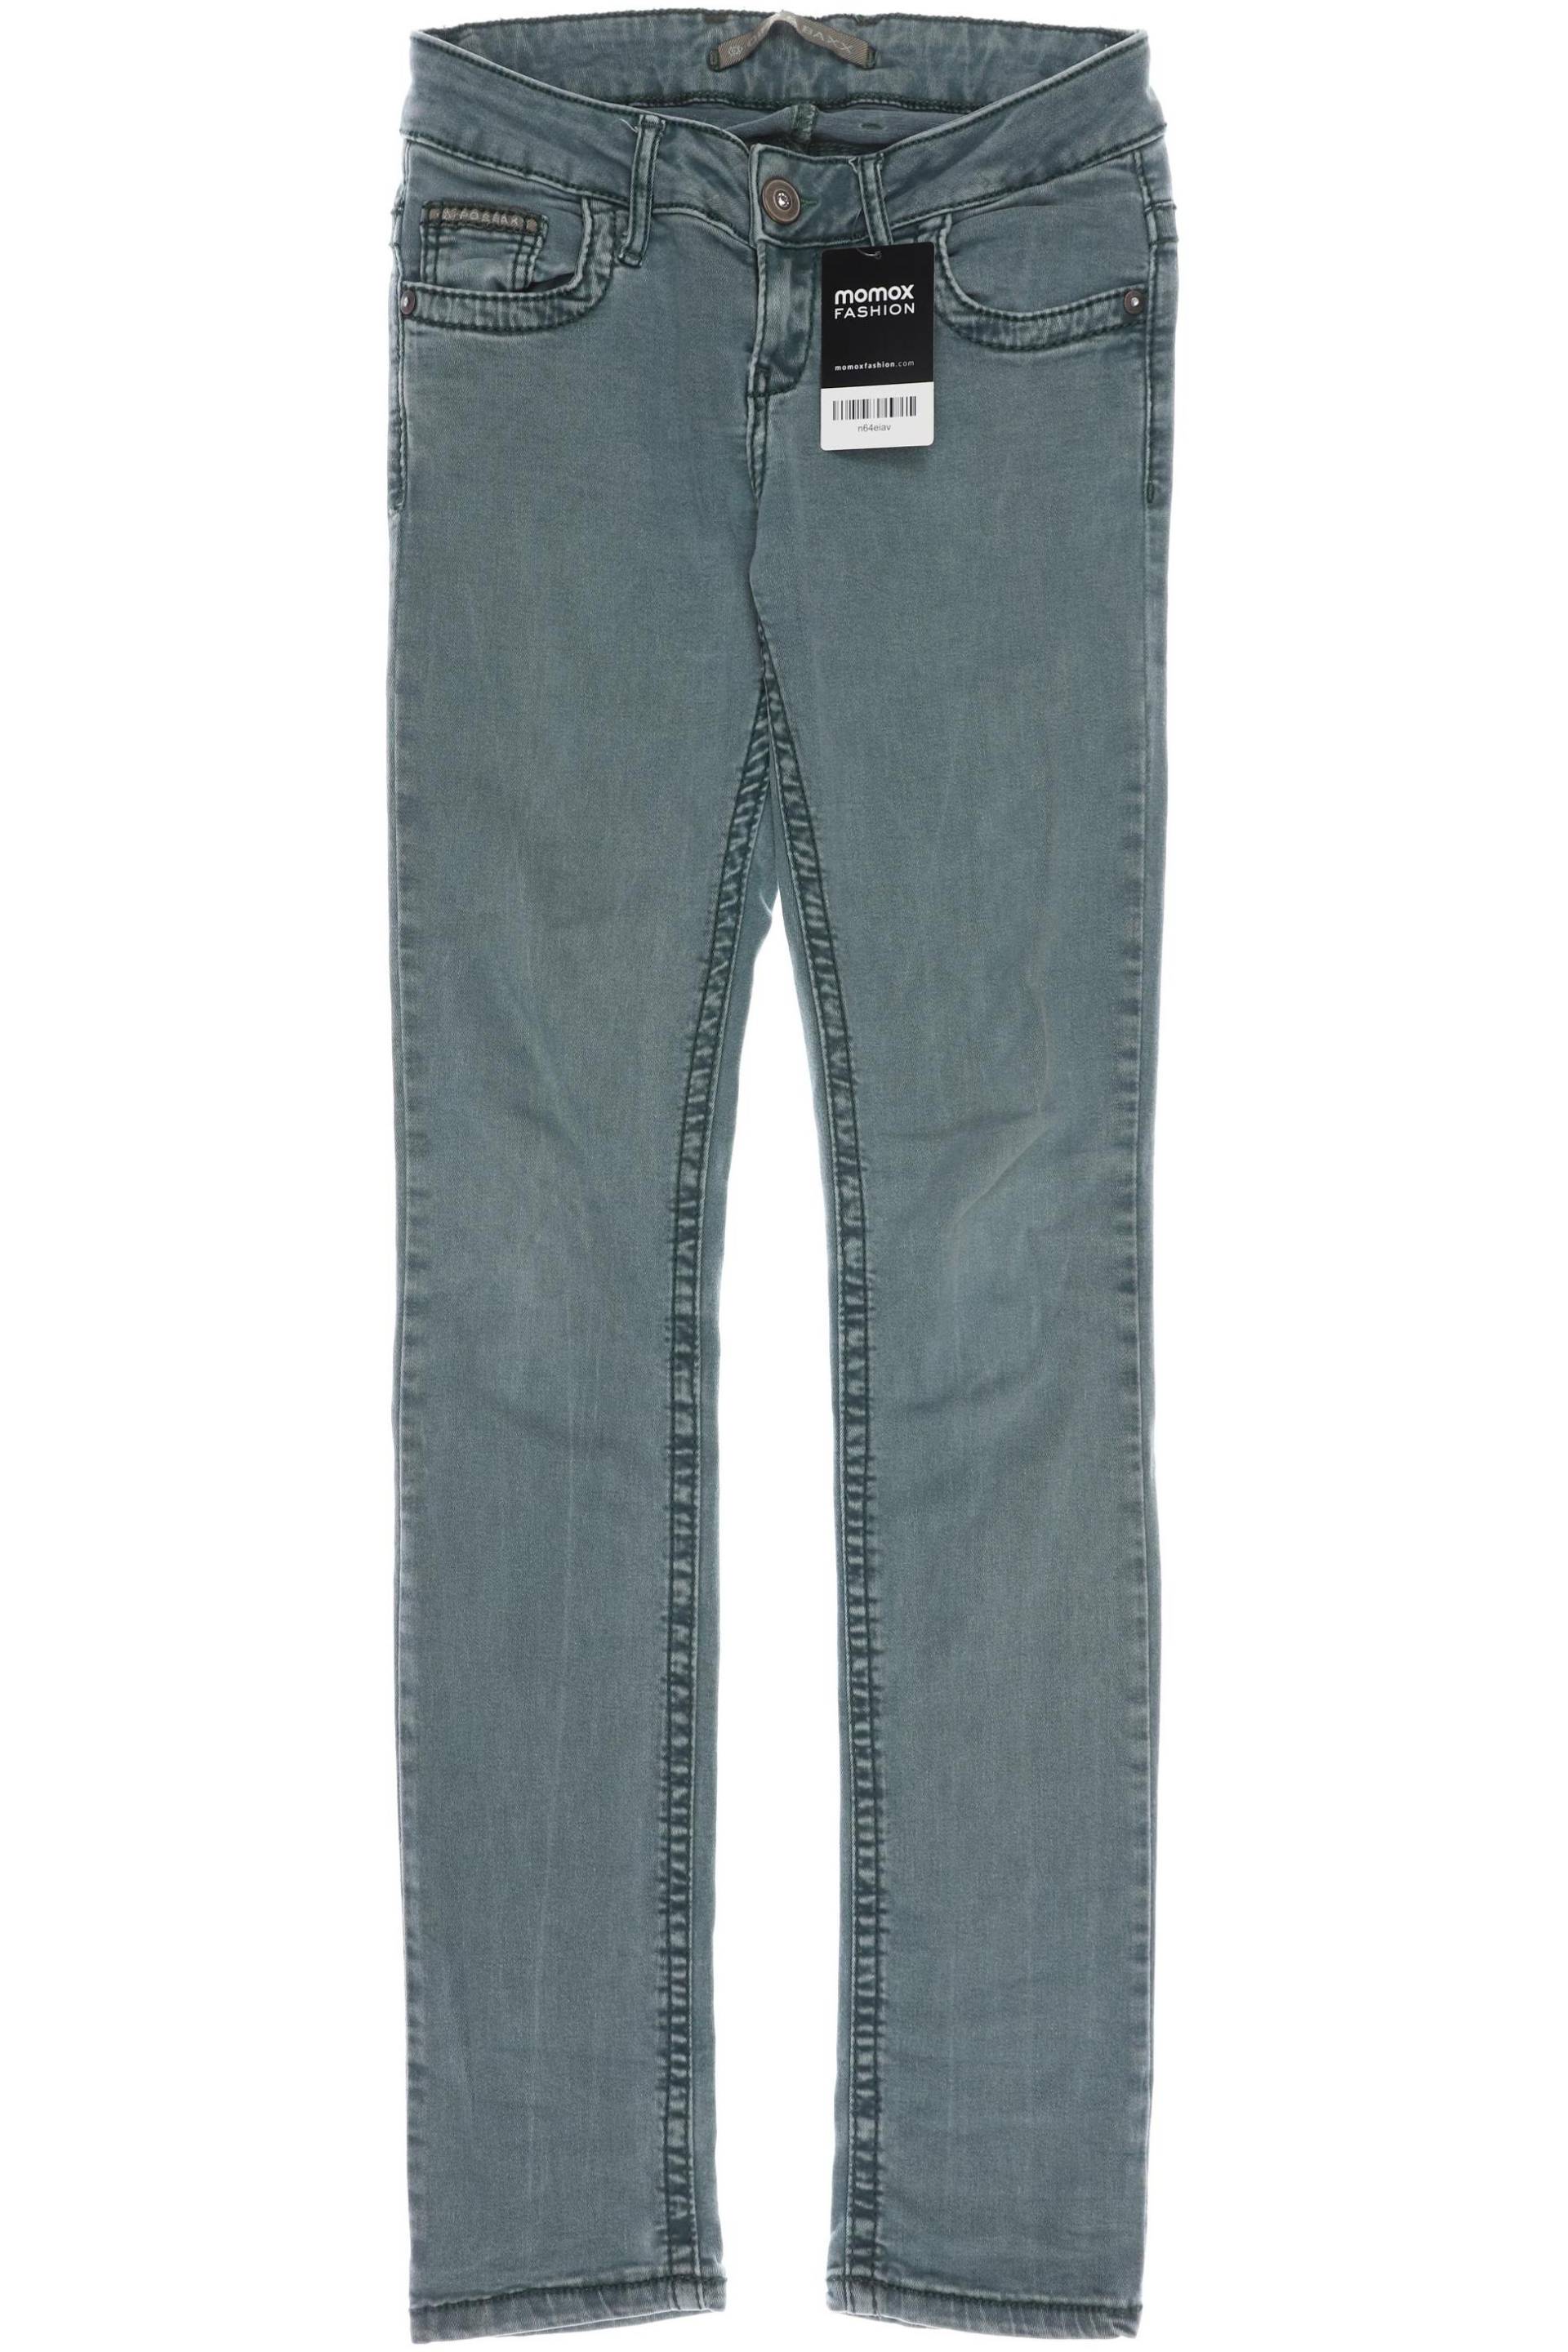 Cipo & Baxx Damen Jeans, grün von Cipo & Baxx